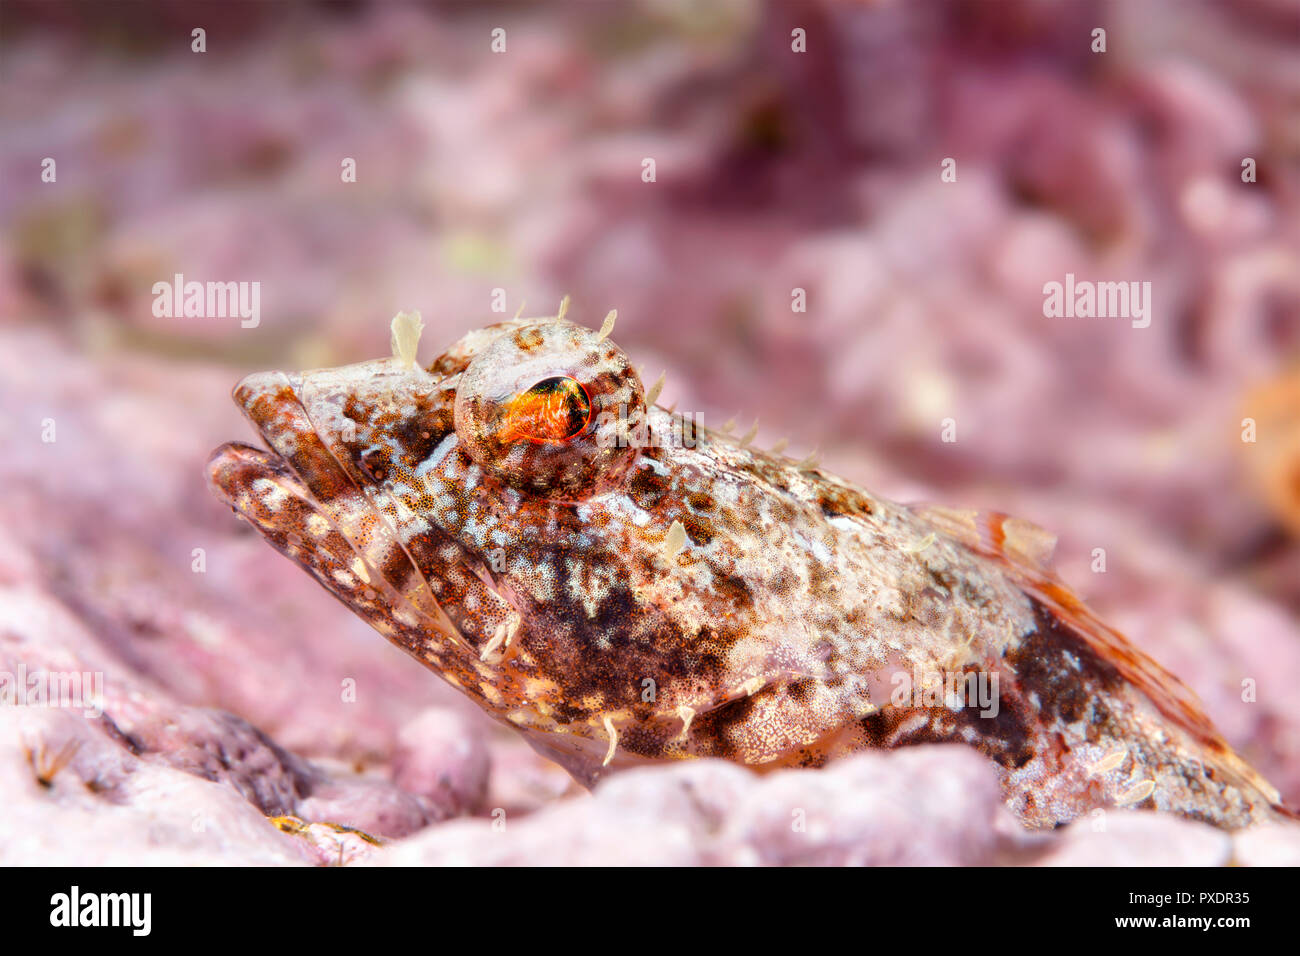 Ein coralline sculpin ruht auf einem Riff in den Gewässern des Kalifornischen Kanalinseln. Coralline sculpin, Unterwasser, Fotografie, Kopf, Gesicht, intertid Stockfoto